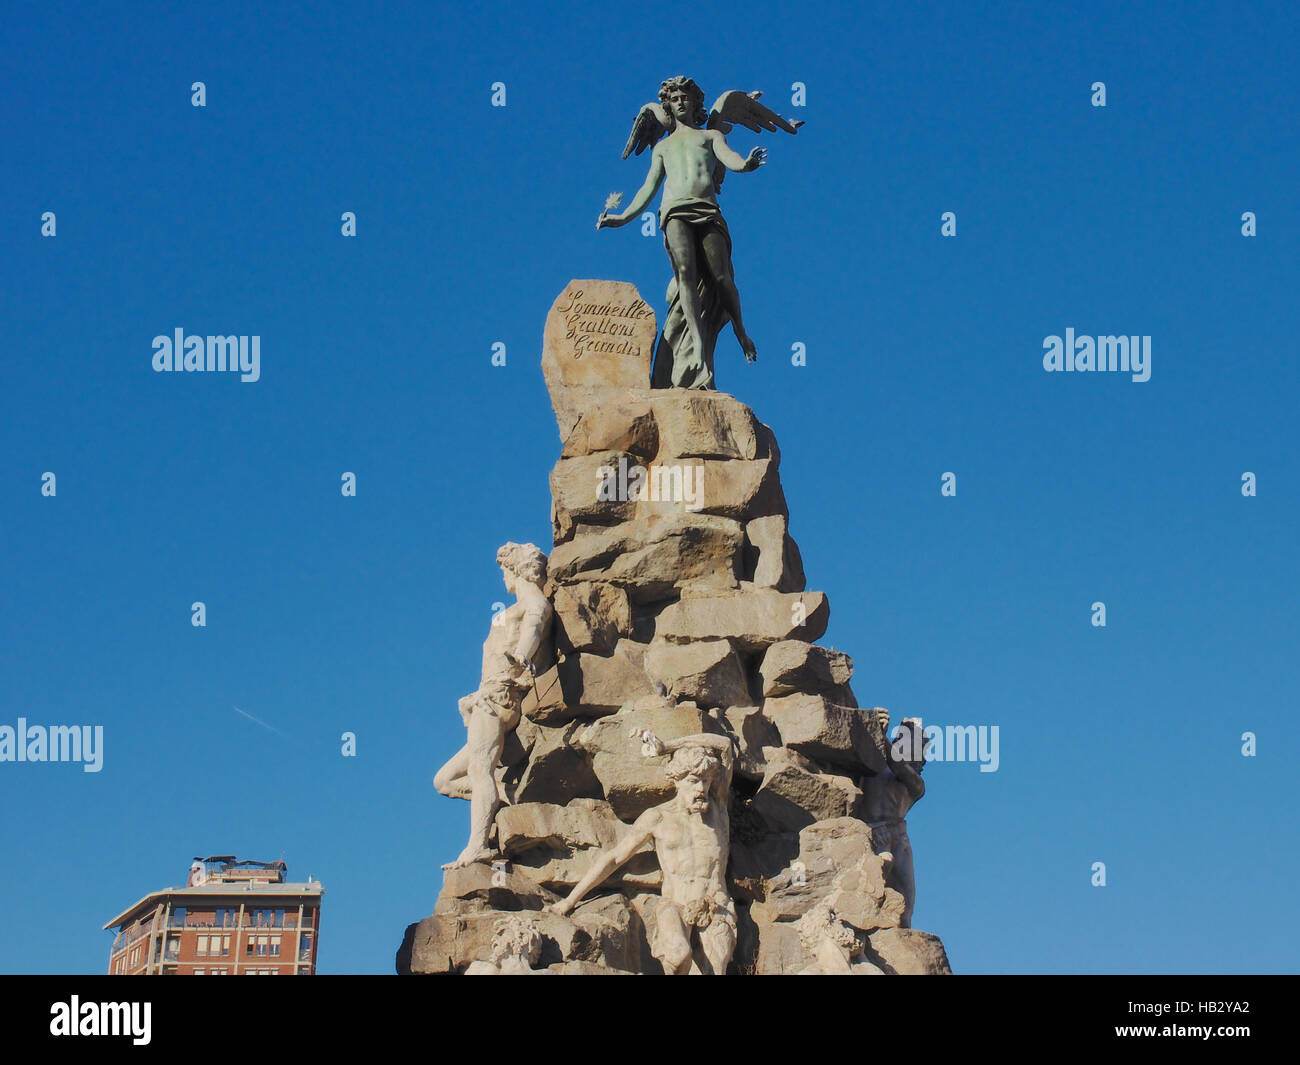 Traforo del Frejus statue in Turin Stock Photo